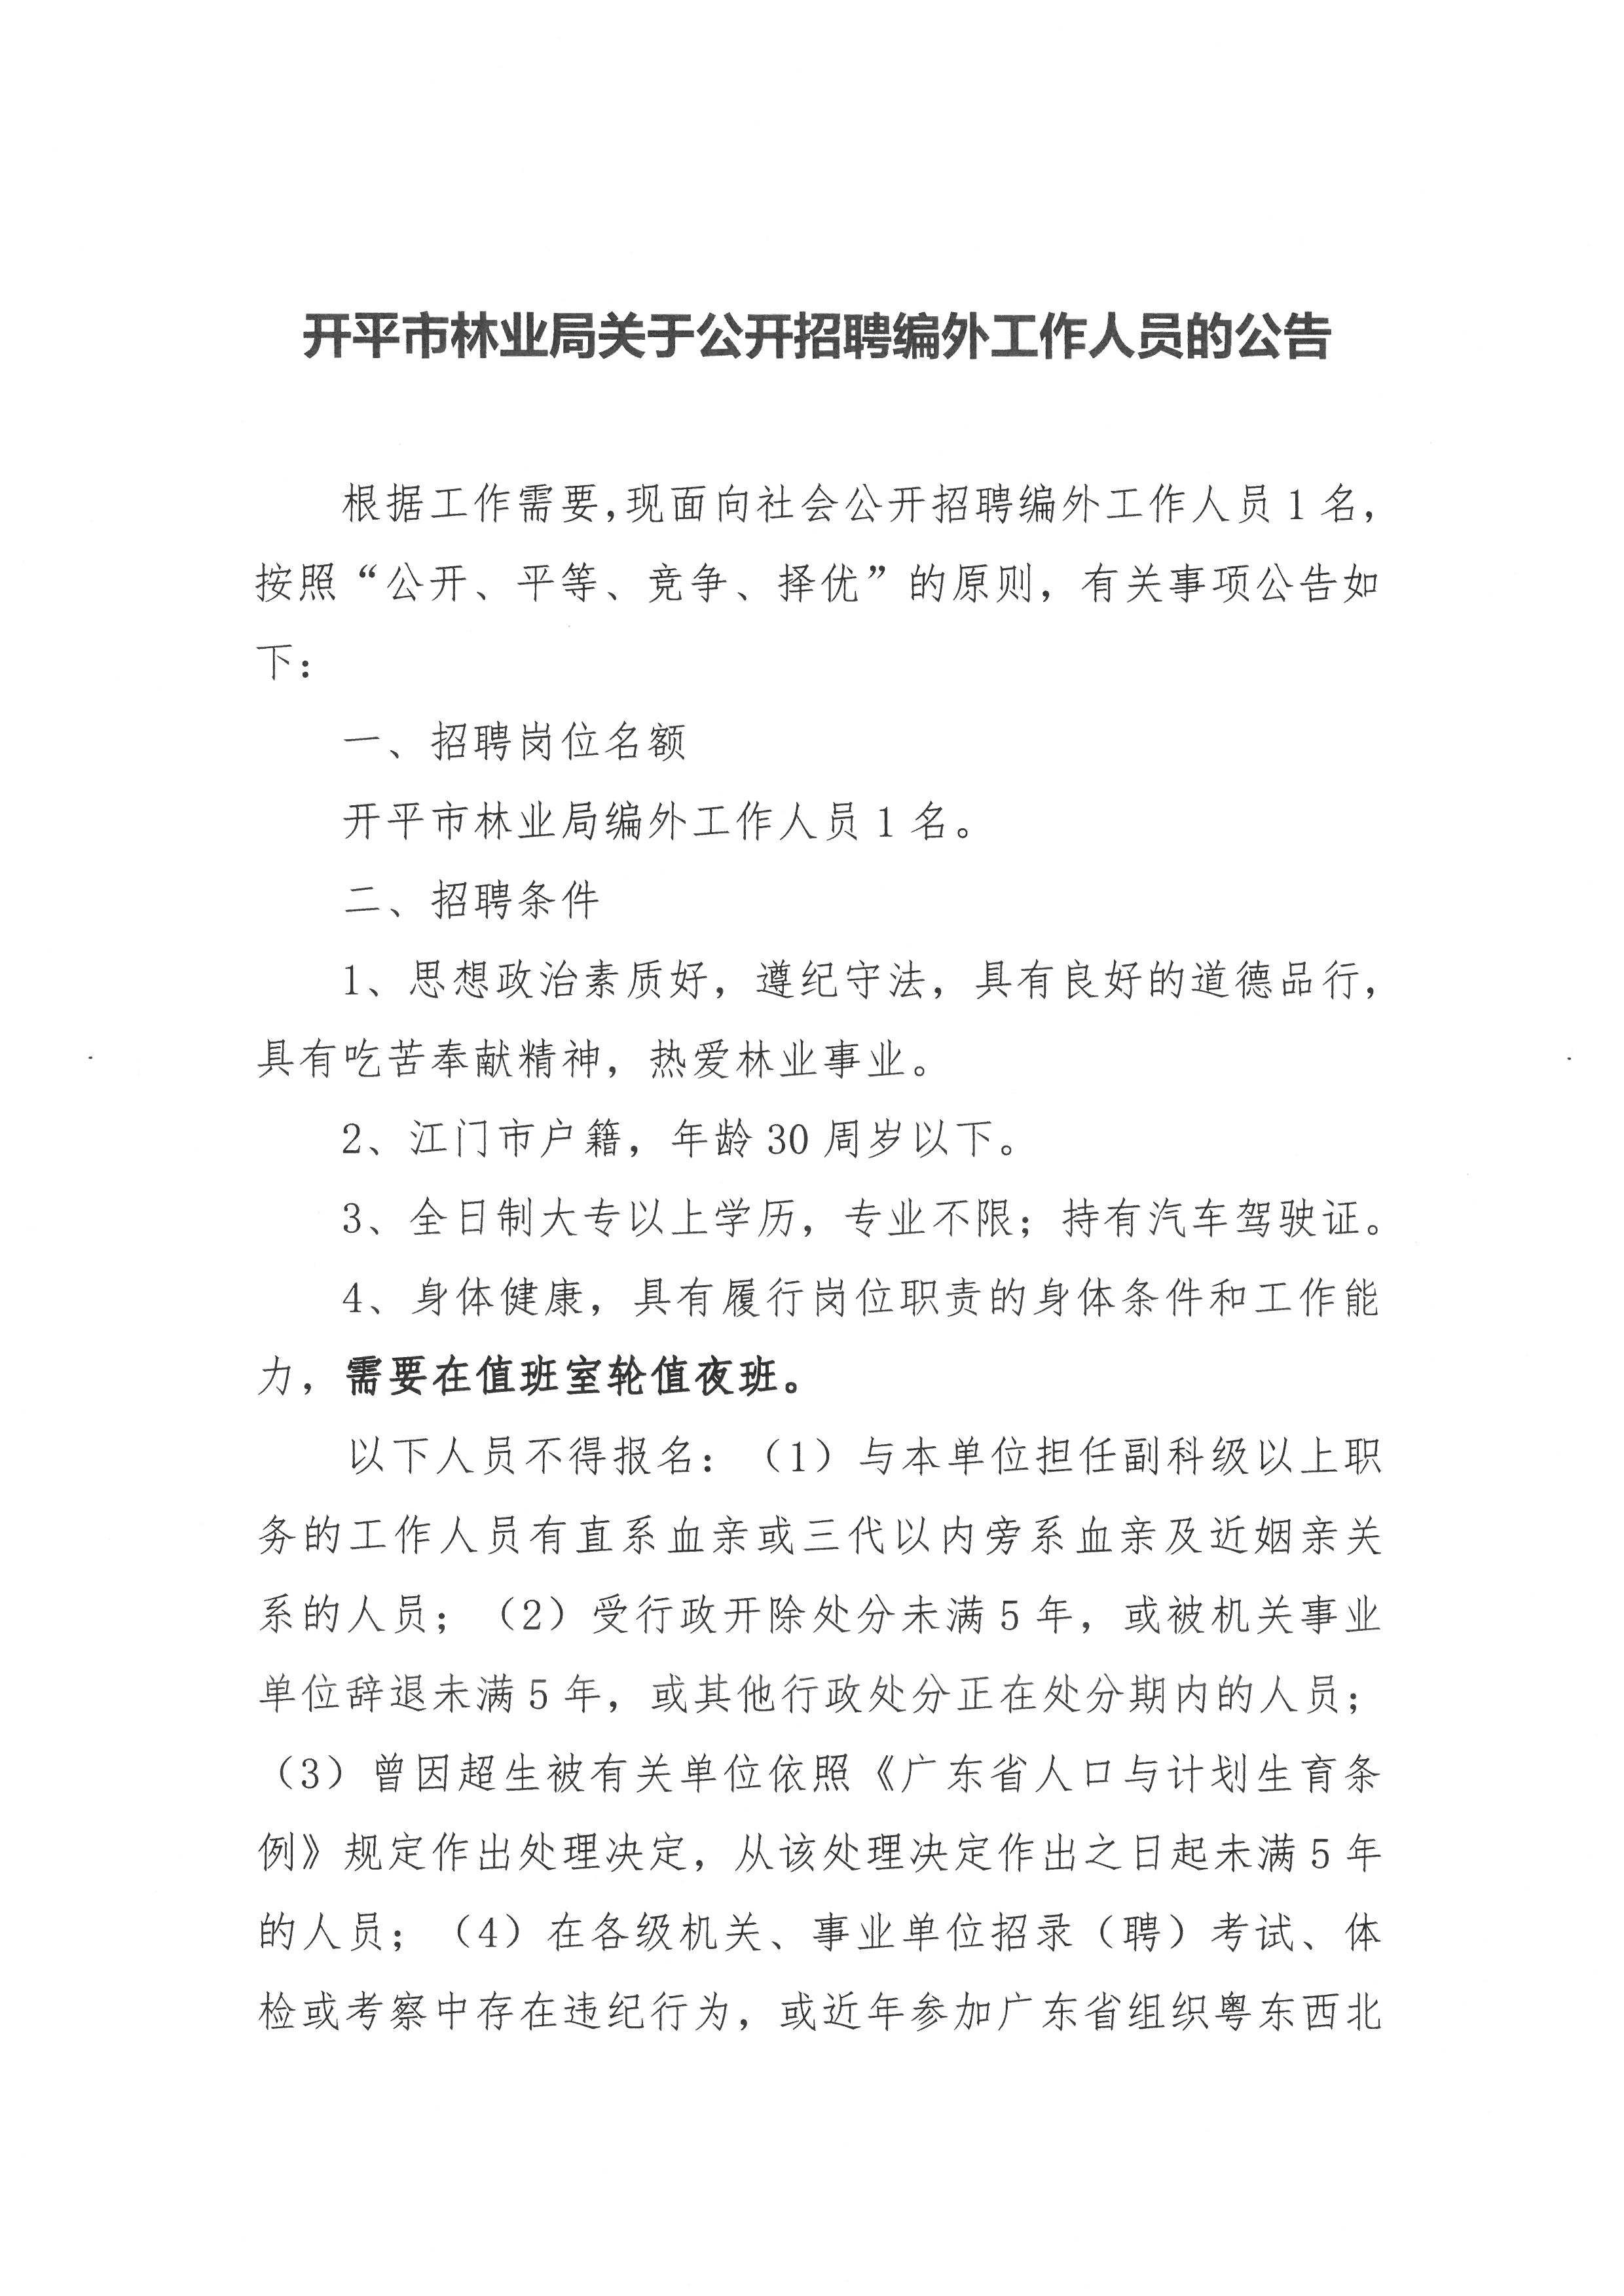 开平市林业局关于公开招聘编外工作人员的公告1.jpg